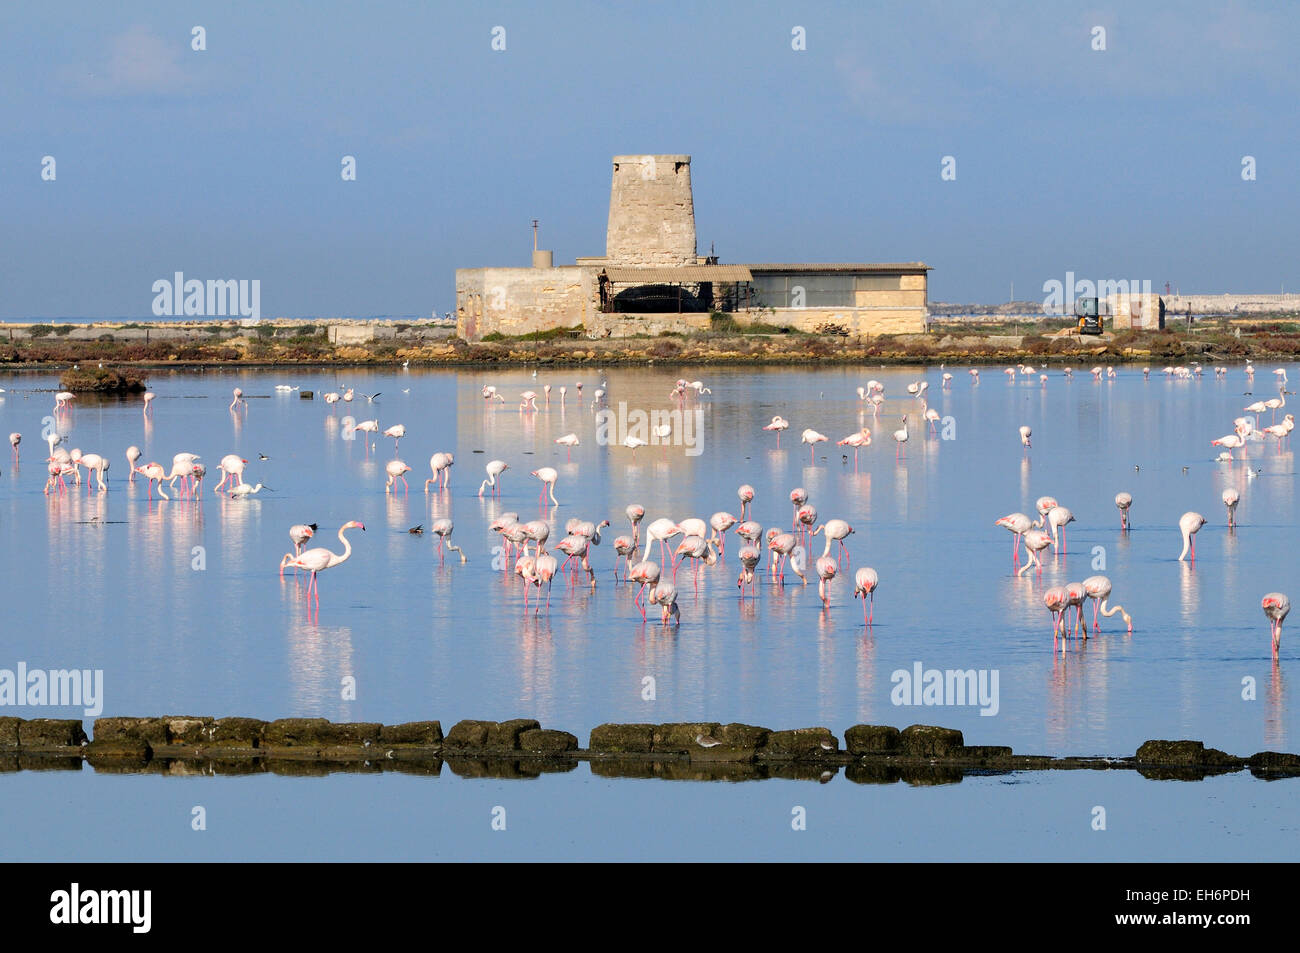 Flamingo (Phoenicopterus ruber) at the old saltworks in the Laguna dello Stagnone near Trapani, Sicily, Italy Stock Photo